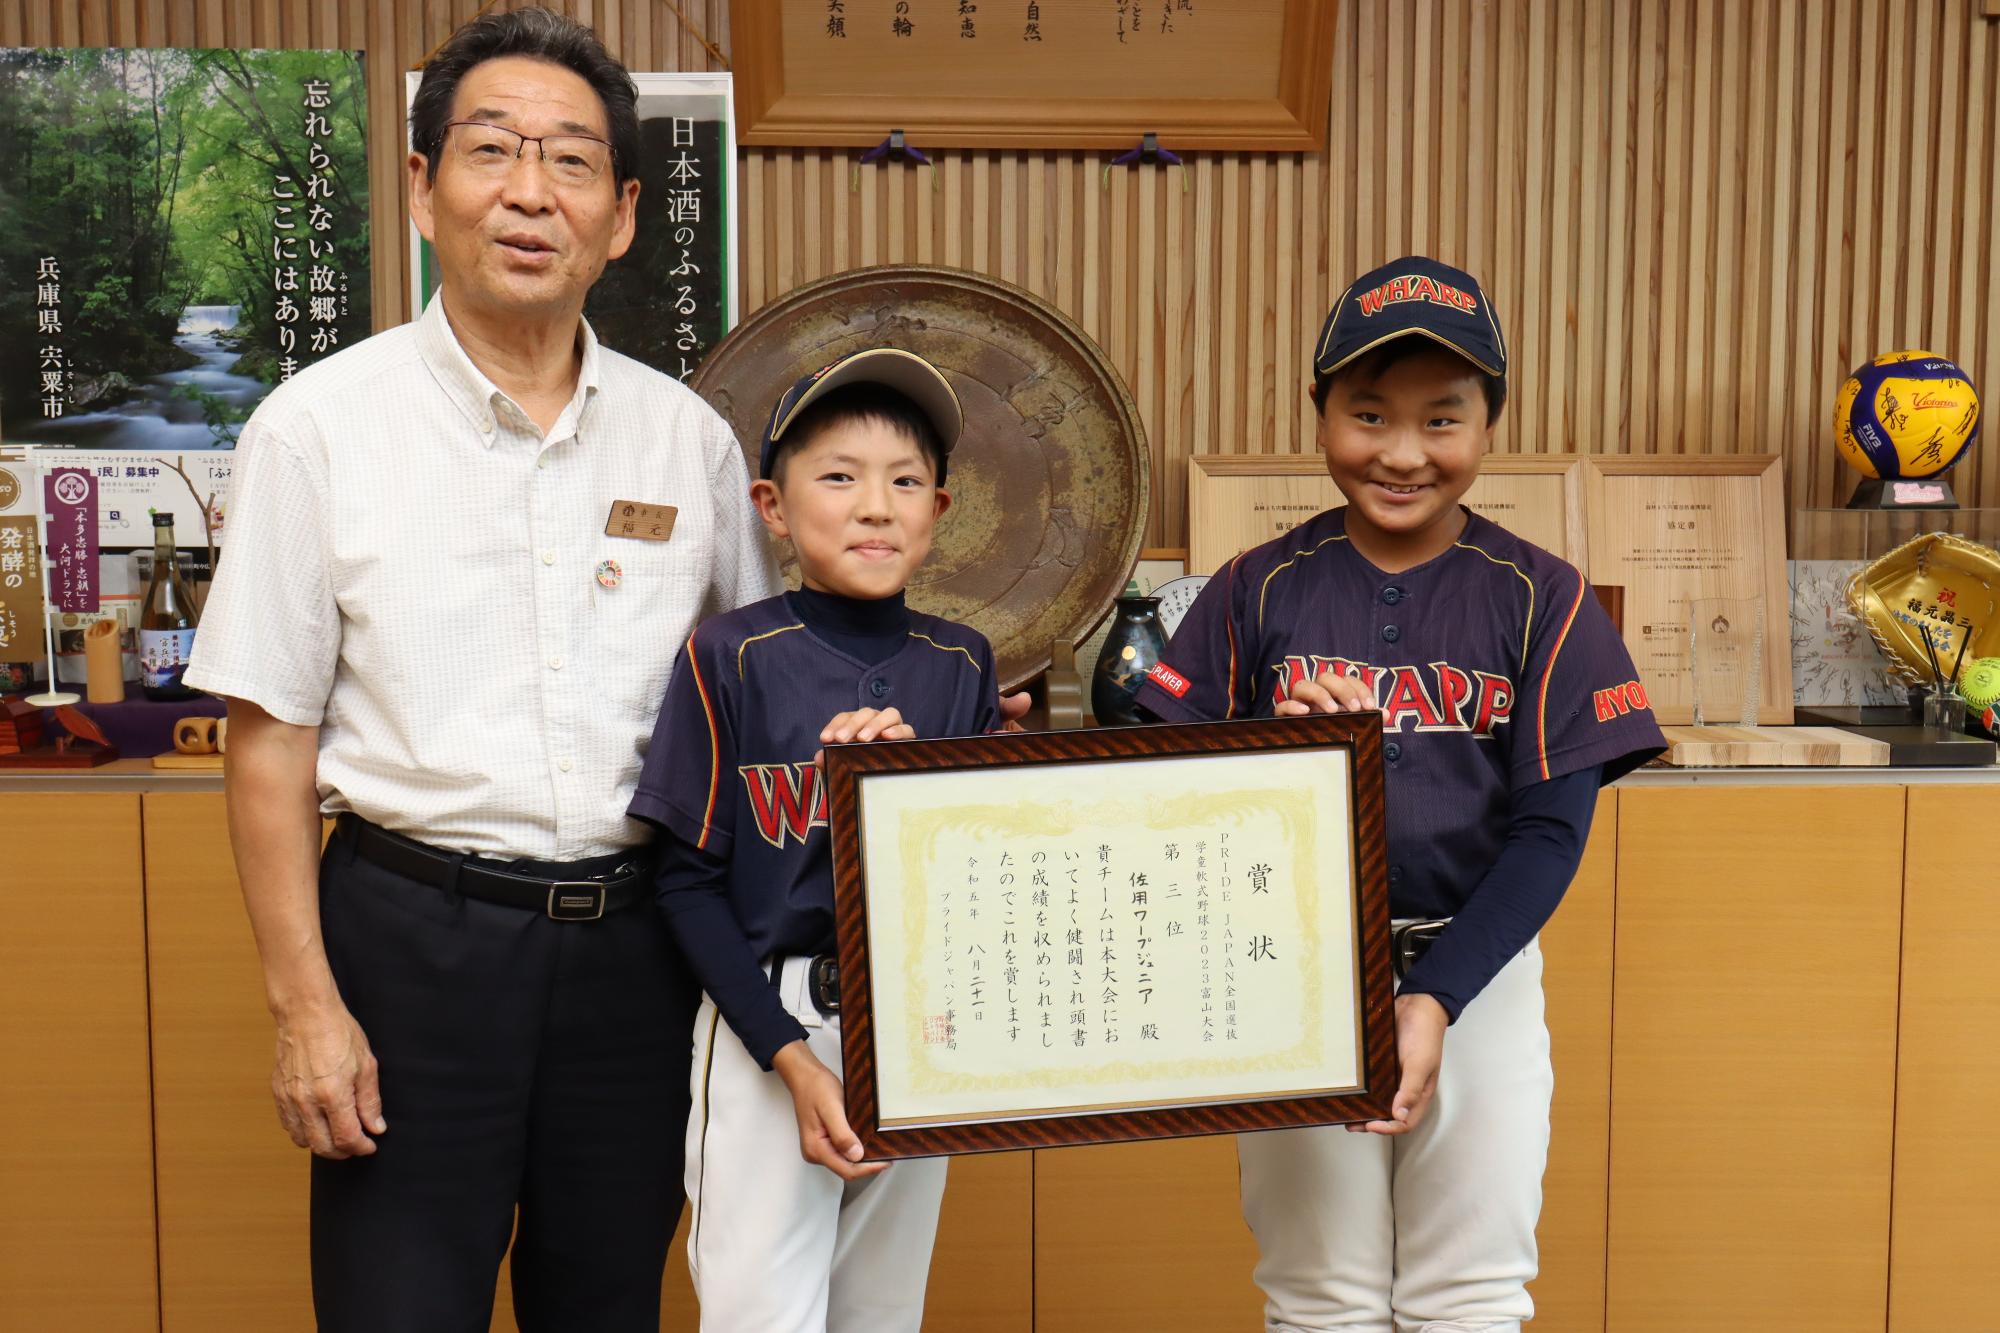 福元市長と野球チームに所属している千種小学校の鎌田さんと山崎小学校の寺田さんの写真